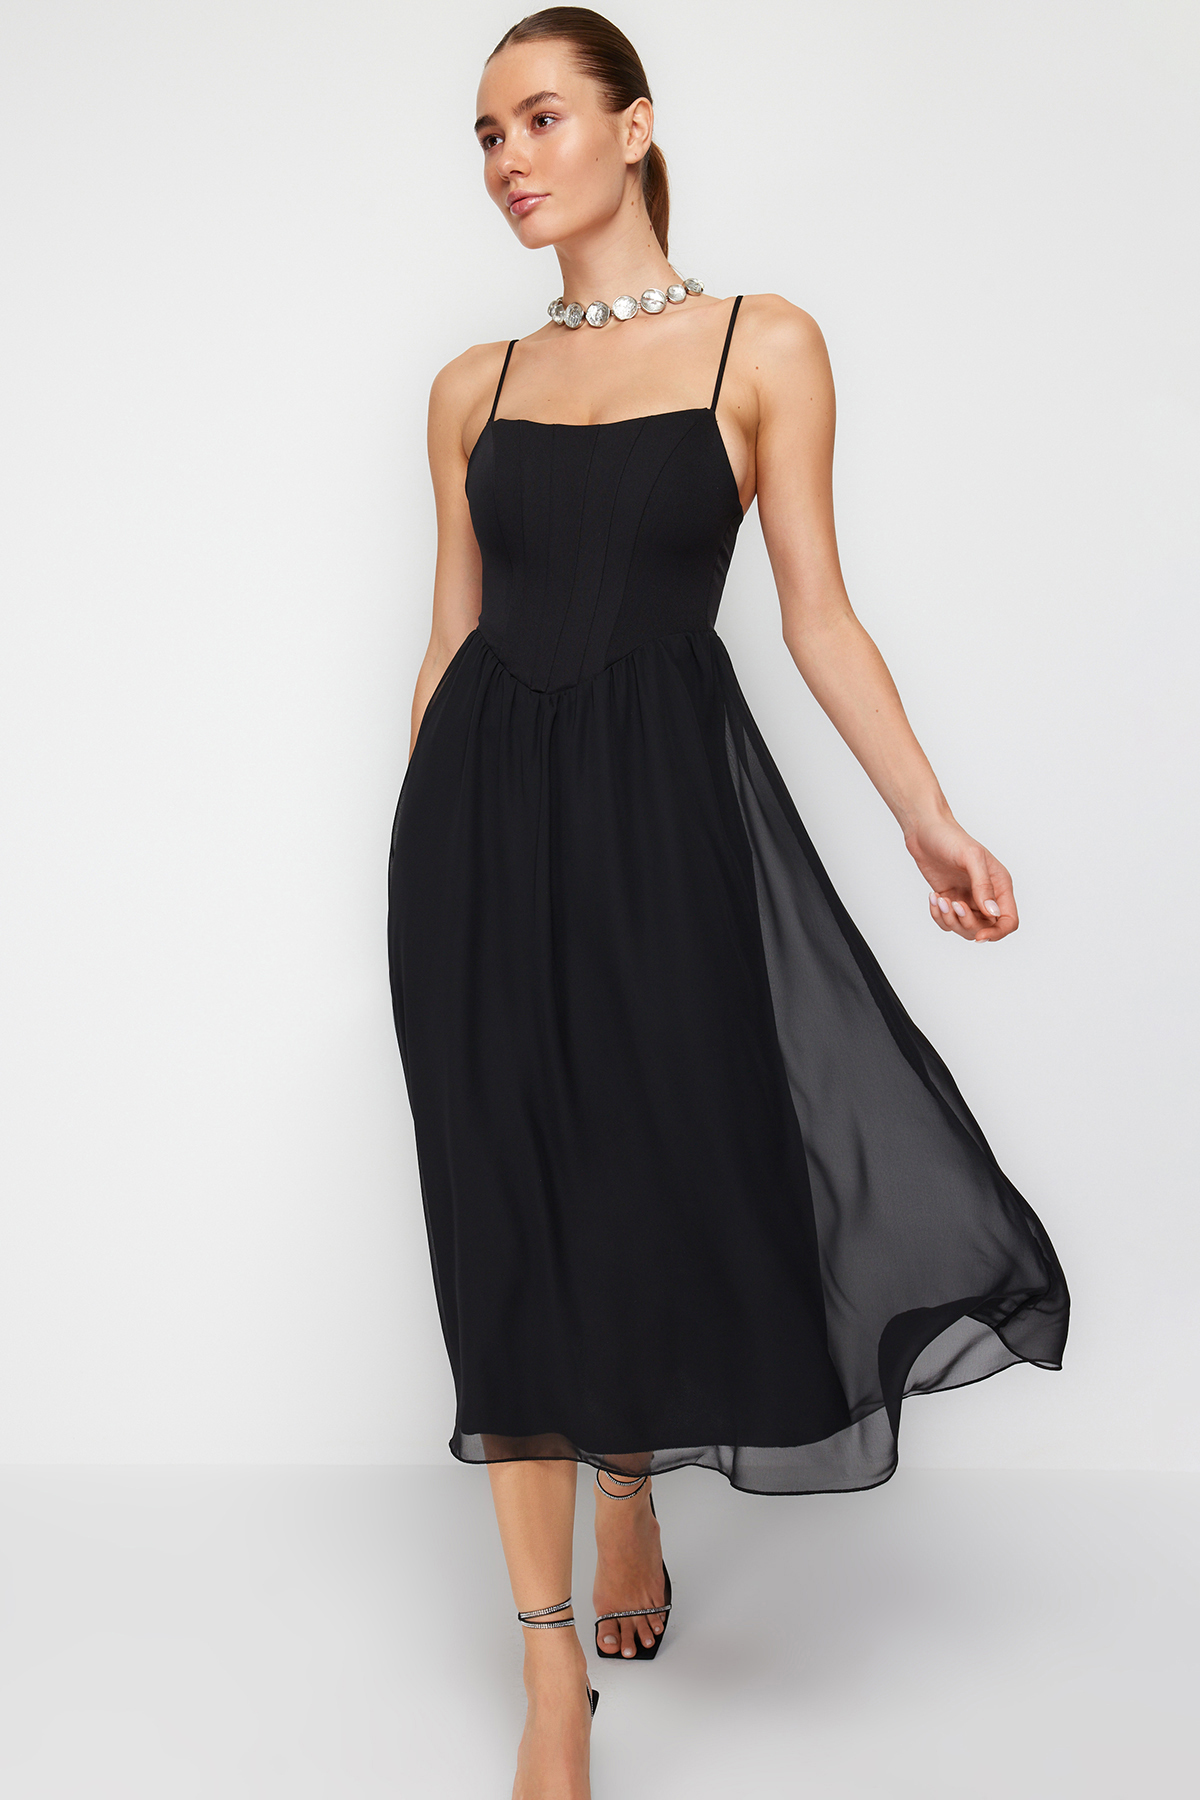 Trendyol Black Open Waist/Skater Lined Corset Detailed Tulle Elegant Evening Dress